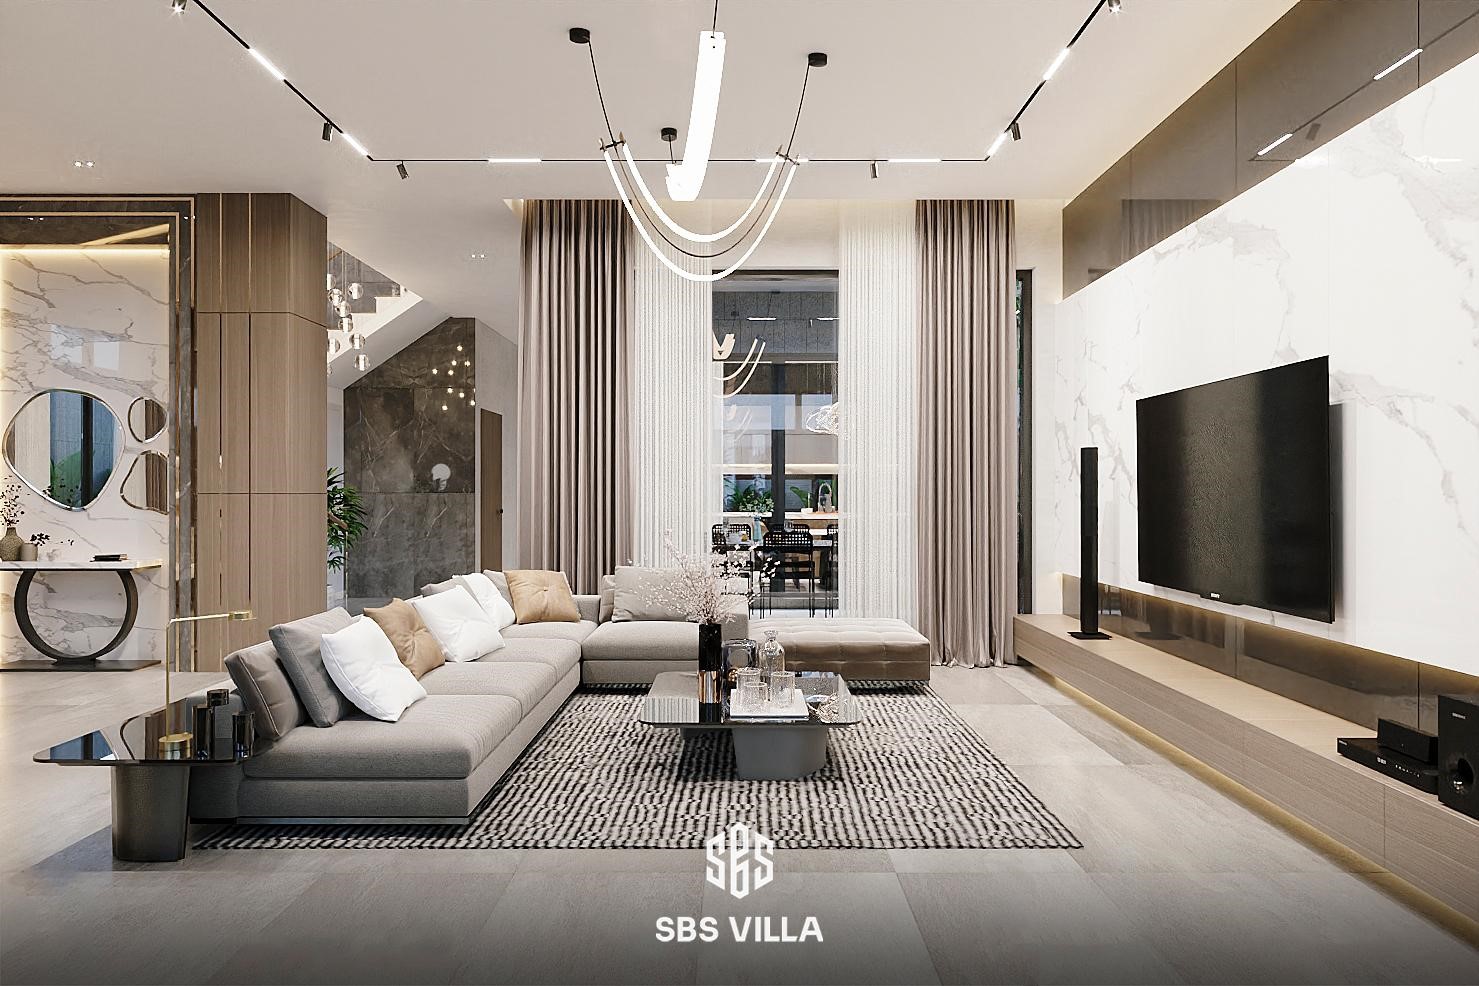 Không gian phòng khách nổi bật với tone màu tươi sáng, tạo điểm nhấn cùng hệ thống ánh sáng hiện đại